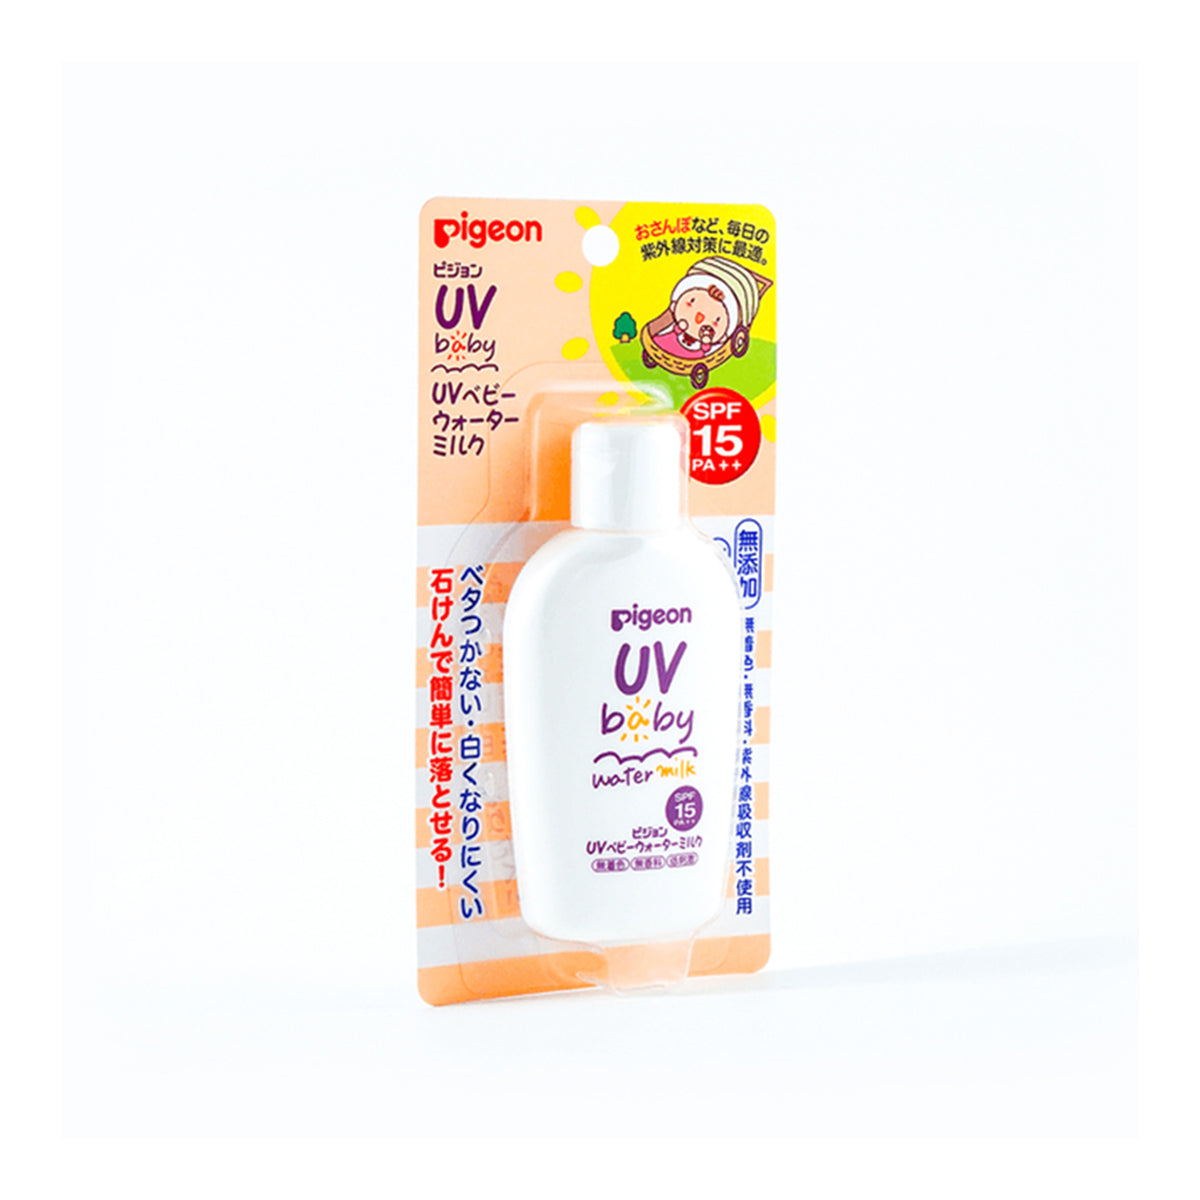 日本PIGEON贝亲防晒霜抗UV新生儿可用防水SPF15 PA++ 60g